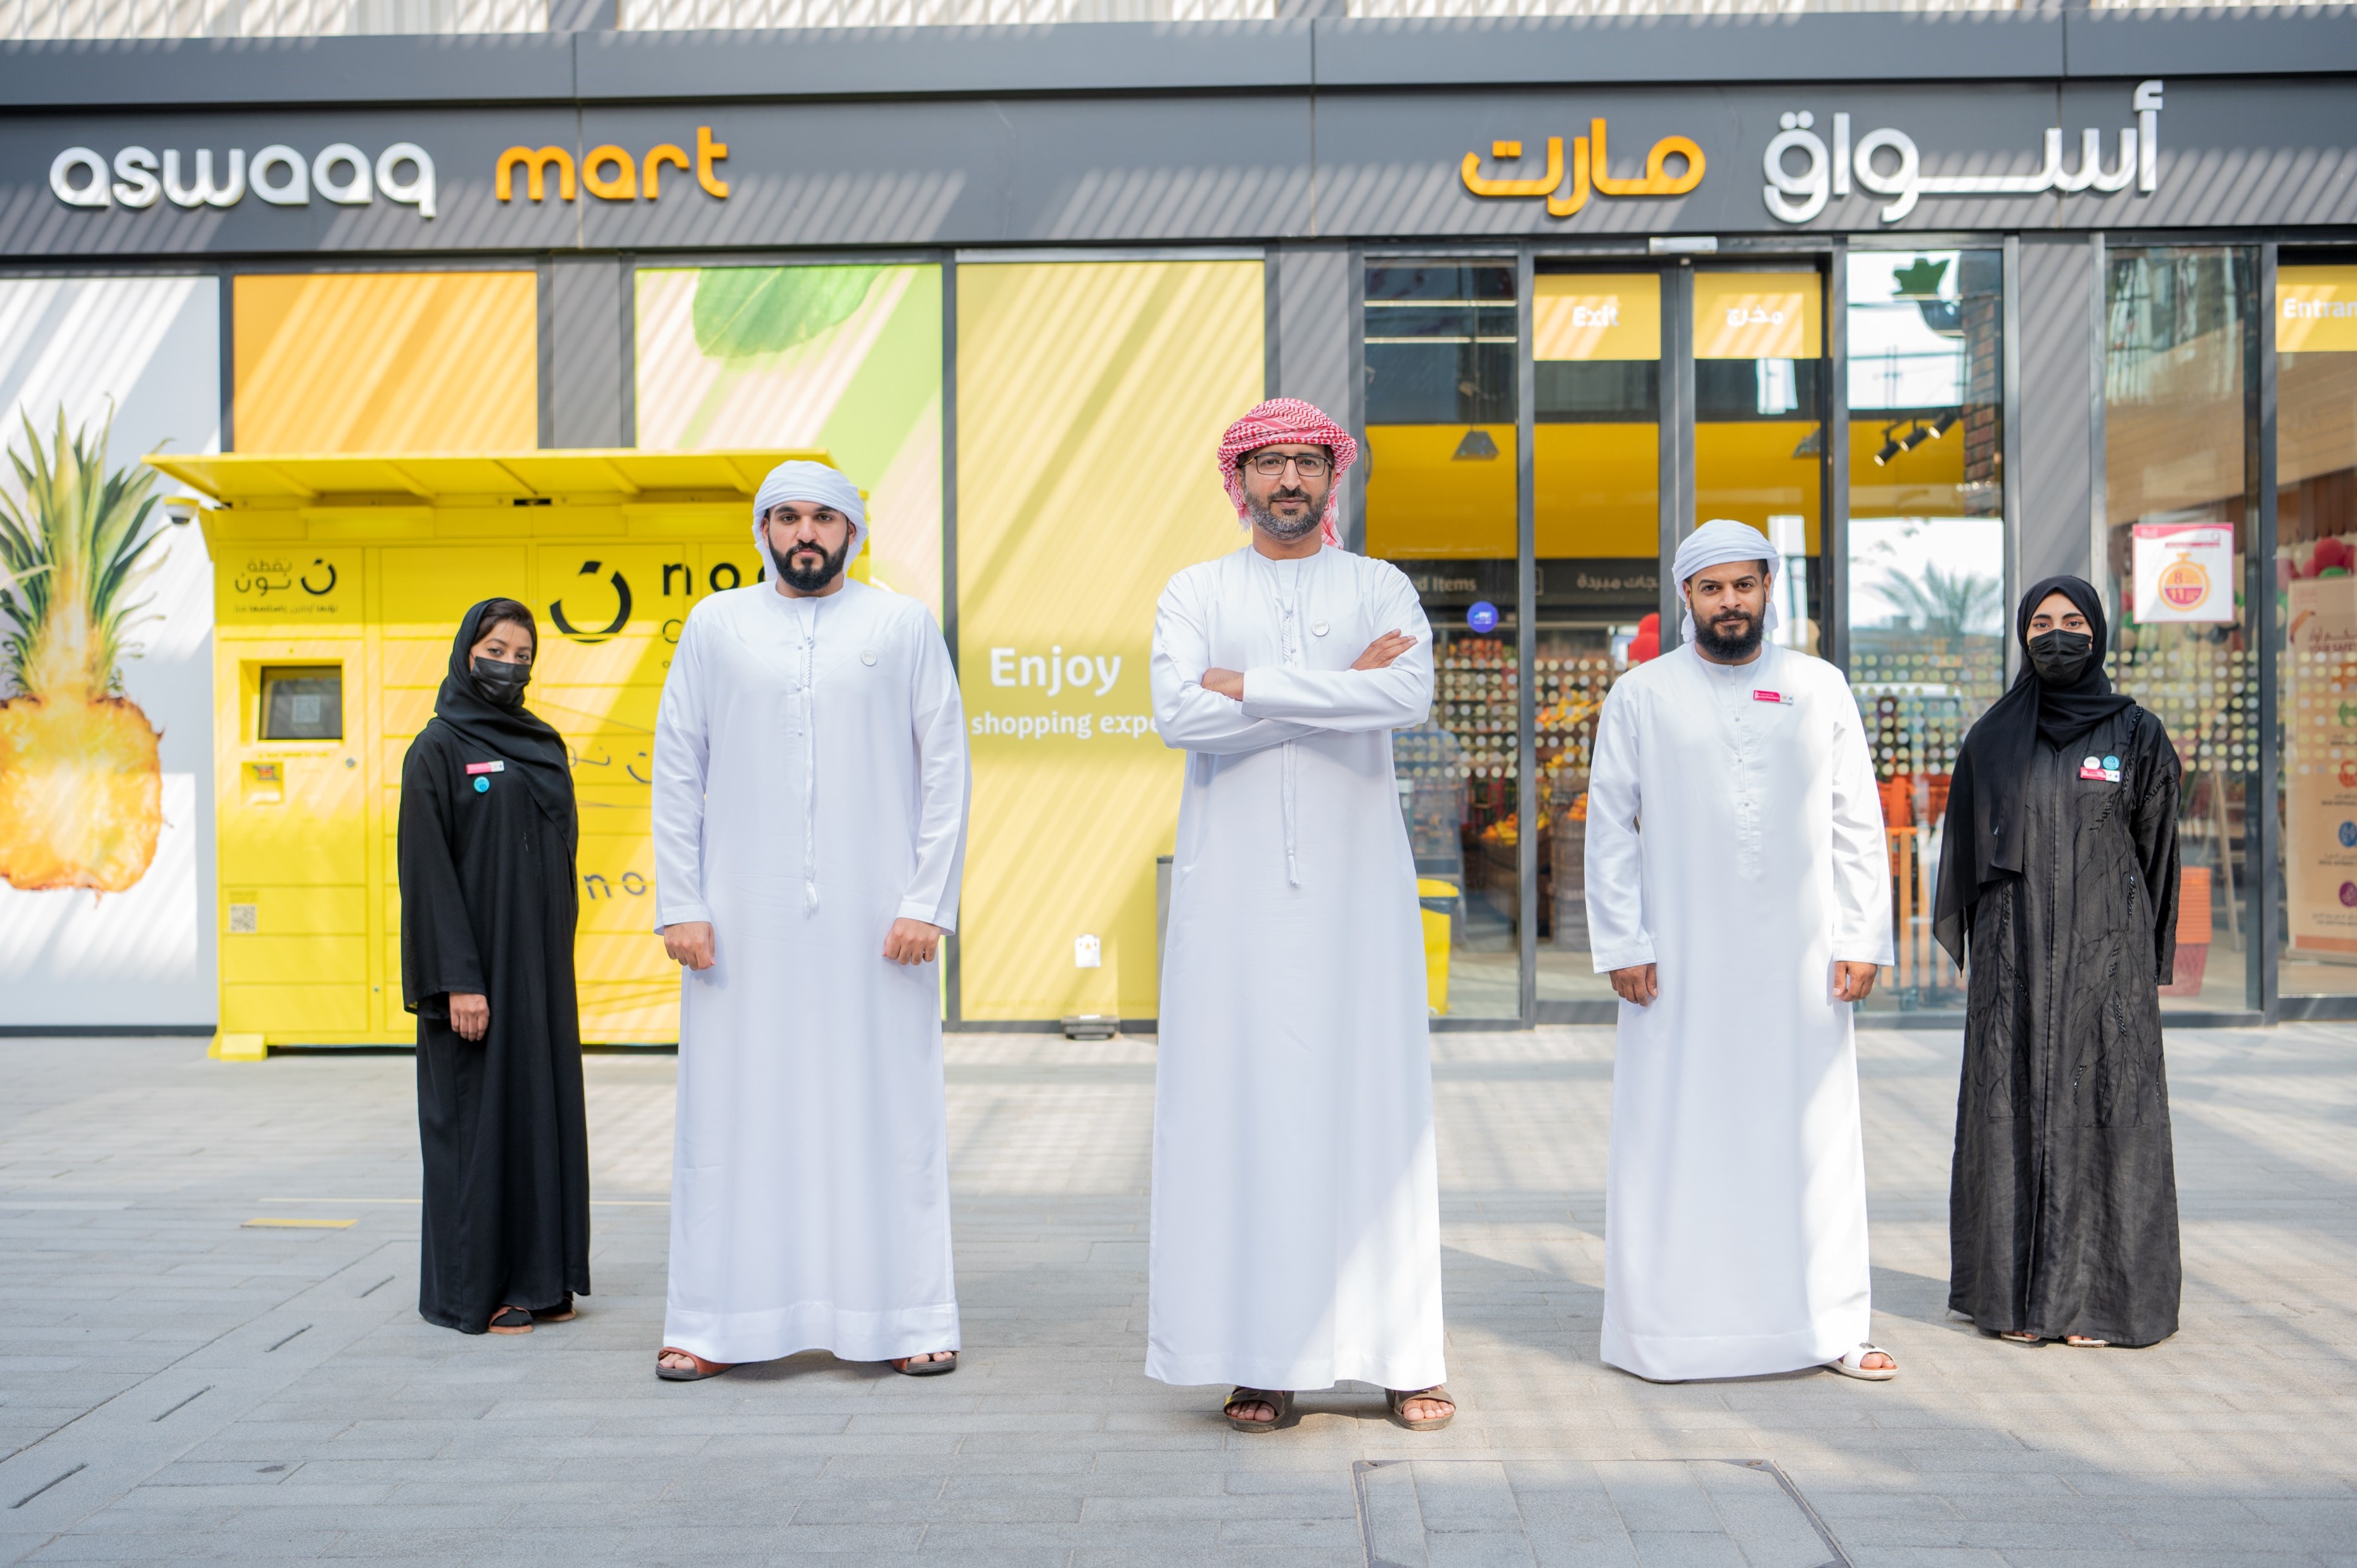  أسواق للتجزئه تحتفل باليوم الوطني الخمسين لدولة الإمارات العربية المتحدة من خلال تشغيل أسواق مارت بالكامل من قبل فريق إماراتي